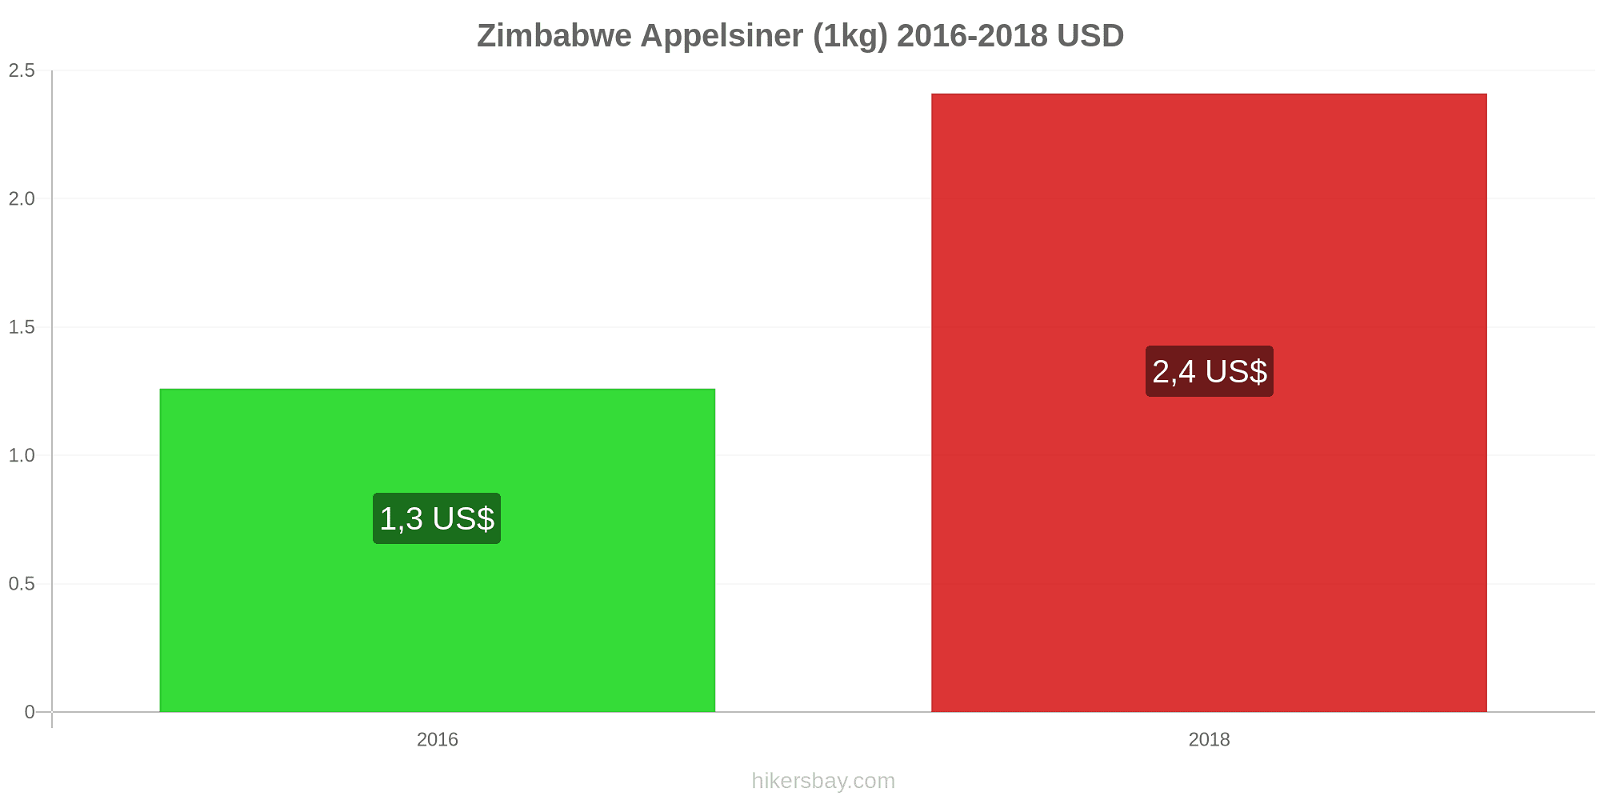 Zimbabwe prisændringer Appelsiner (1kg) hikersbay.com